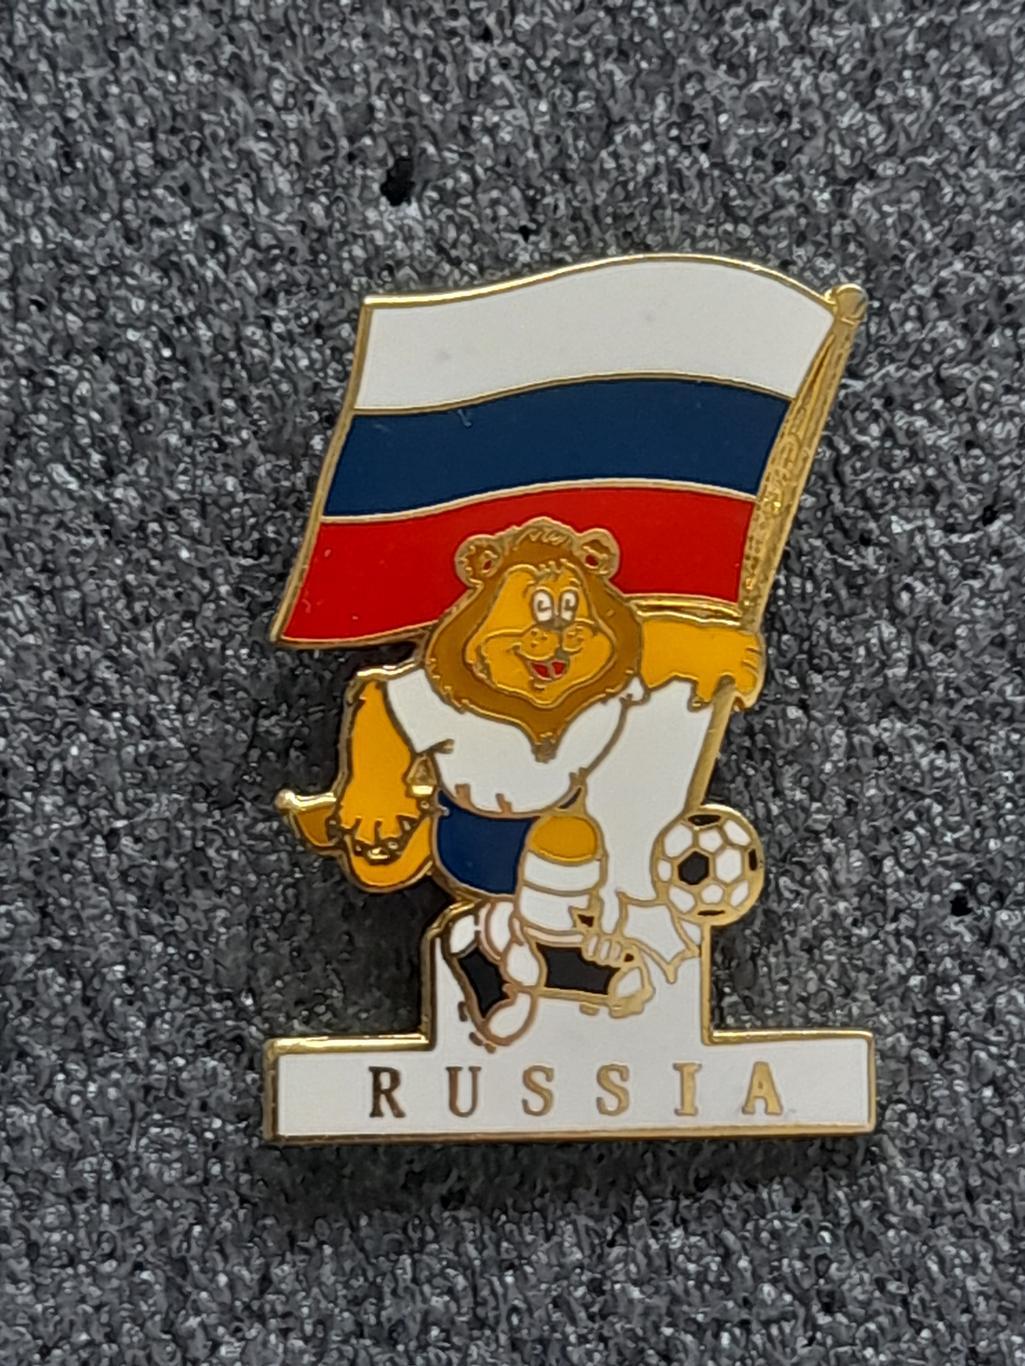 Чемпіонат Європи 1996 зб. Росія/European Championship 1996 Russia(15)тавро